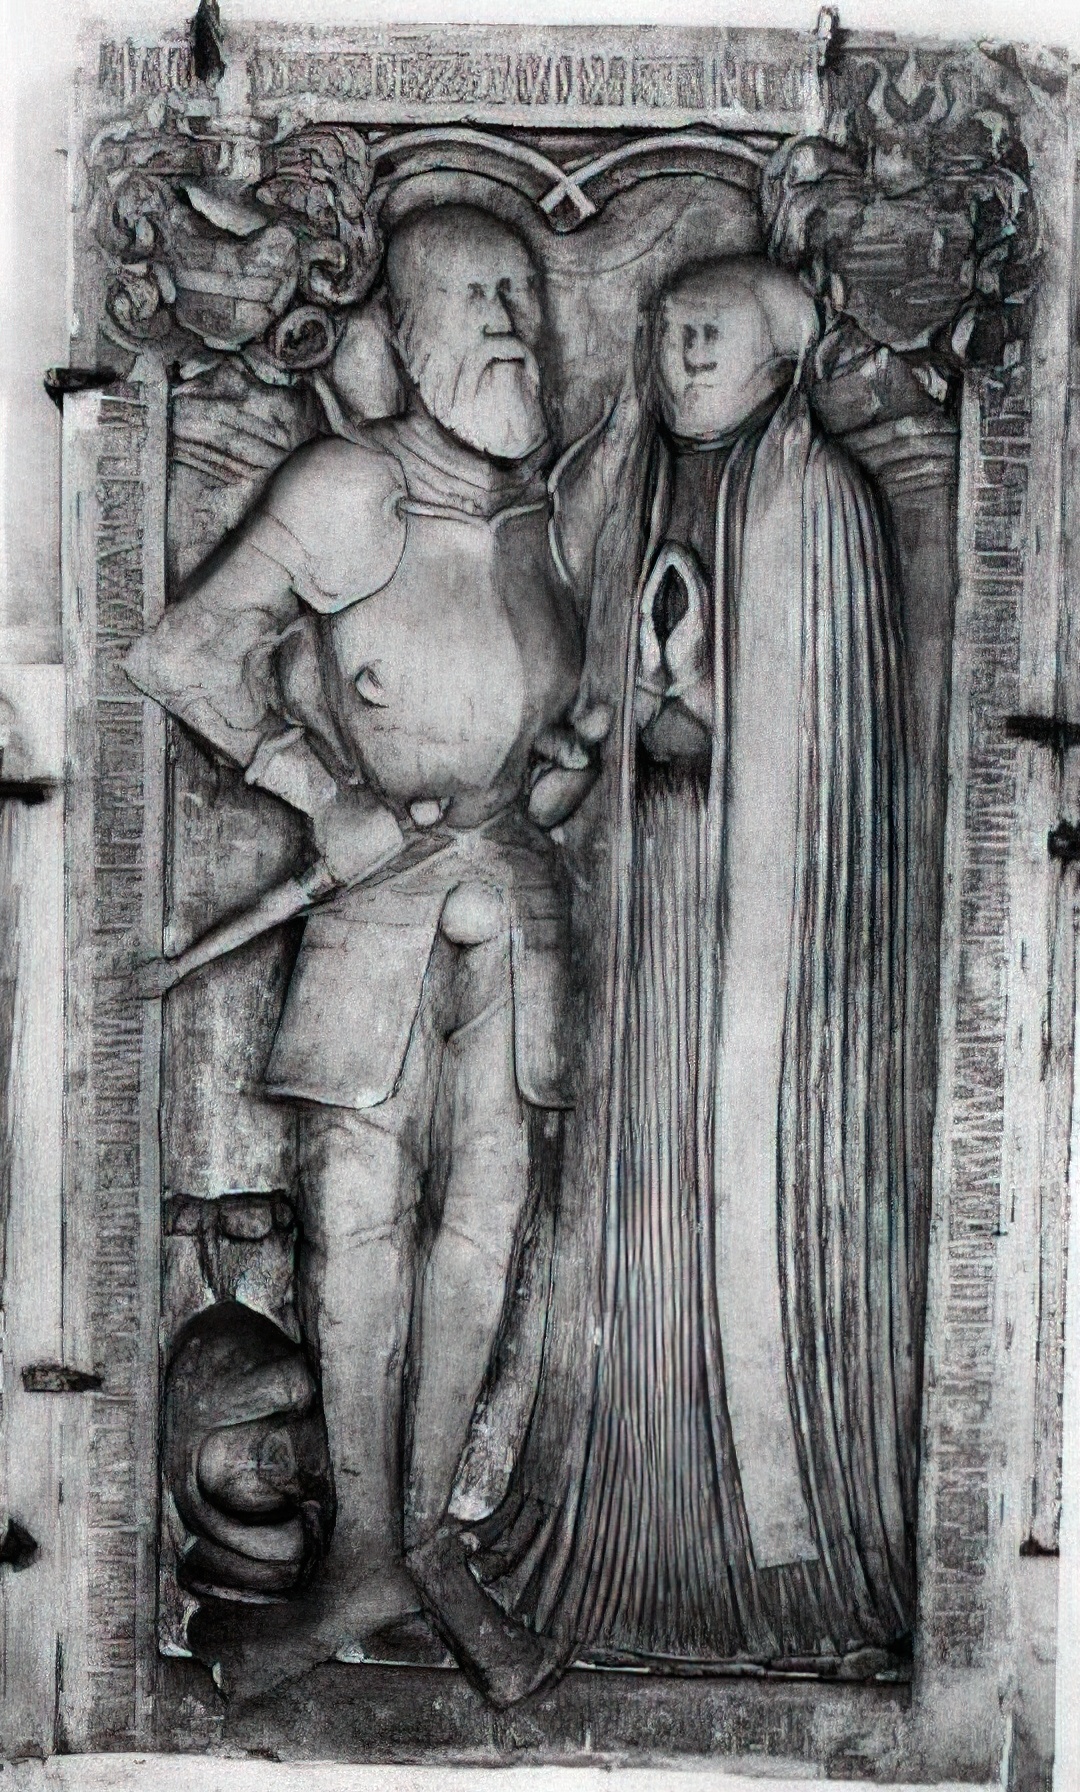 Grabsteine für Valentin I. von Alvensleben (1529-1594) und seiner Gemahlin Anna, geb. von Veltheim (1532-1565), Nicolaikirche